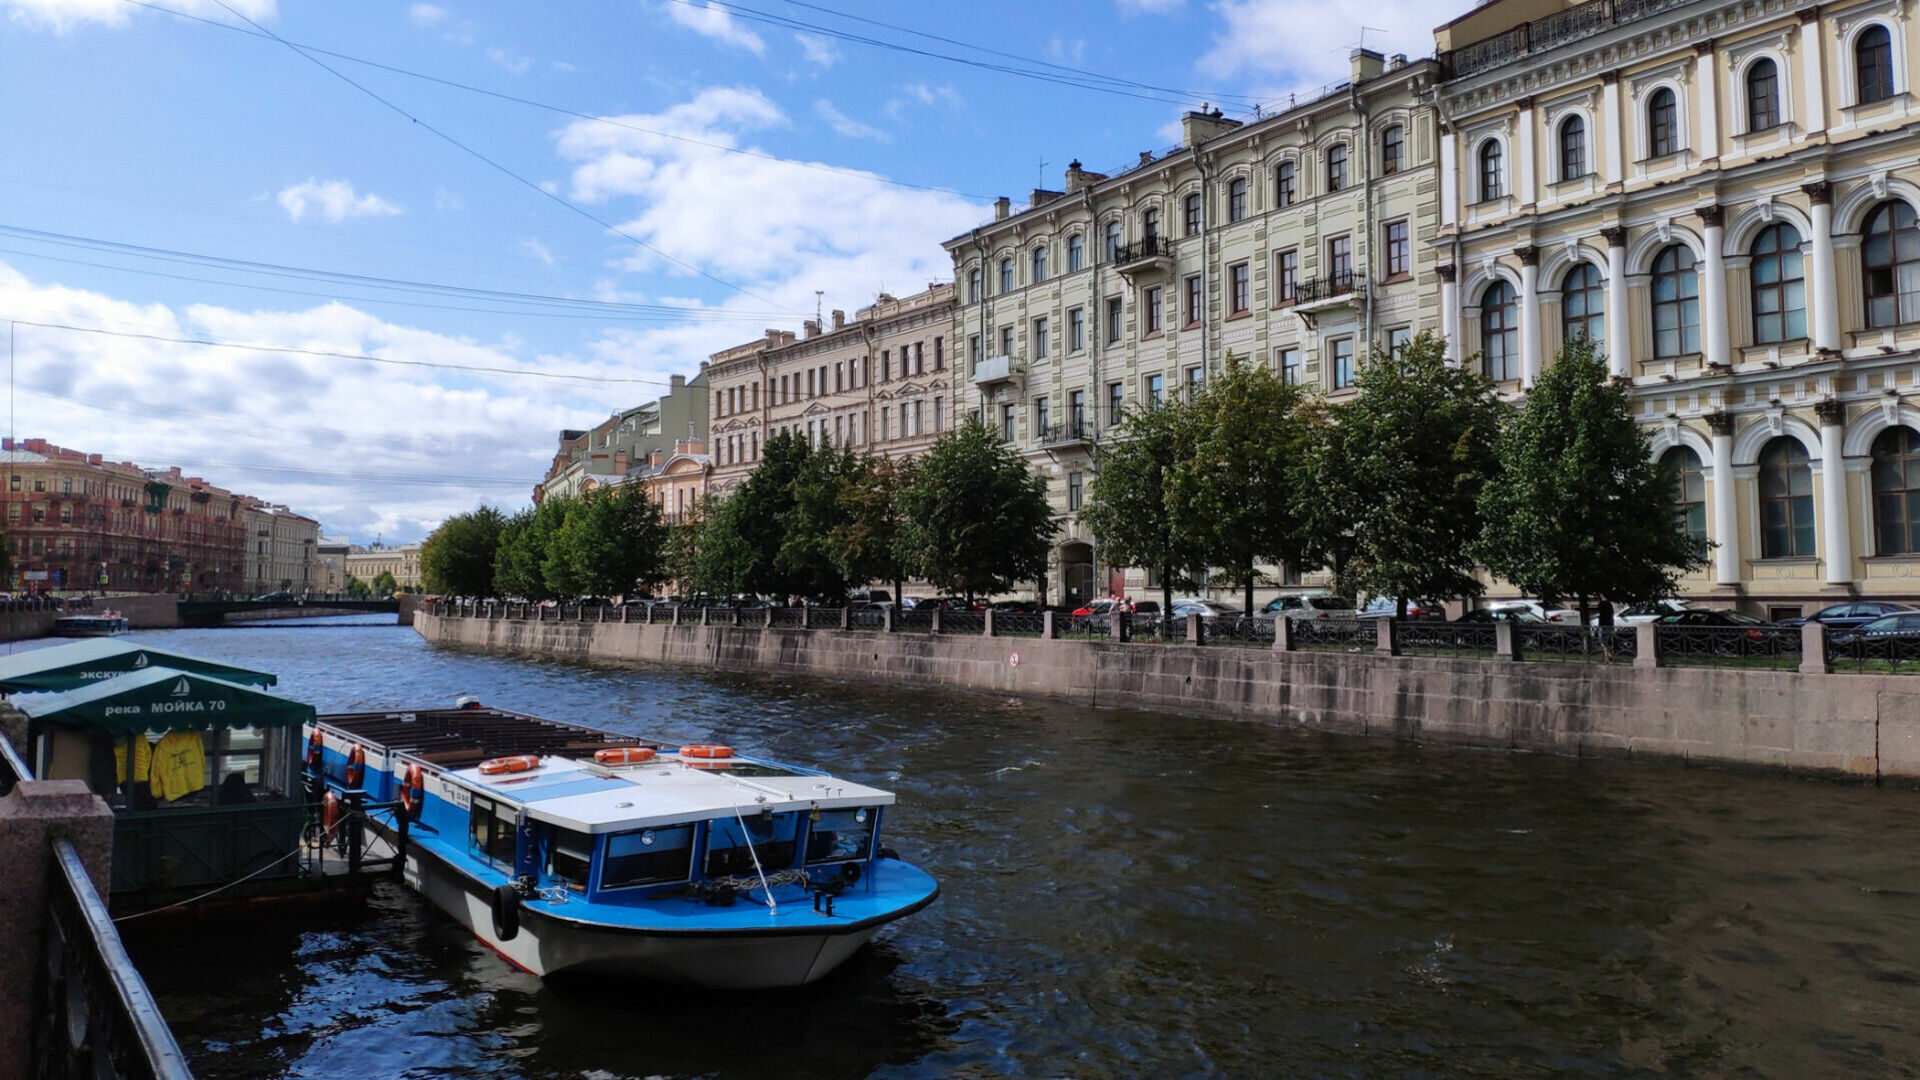 Отдых в Санкт-Петербурге: как интересно и необычно провести время